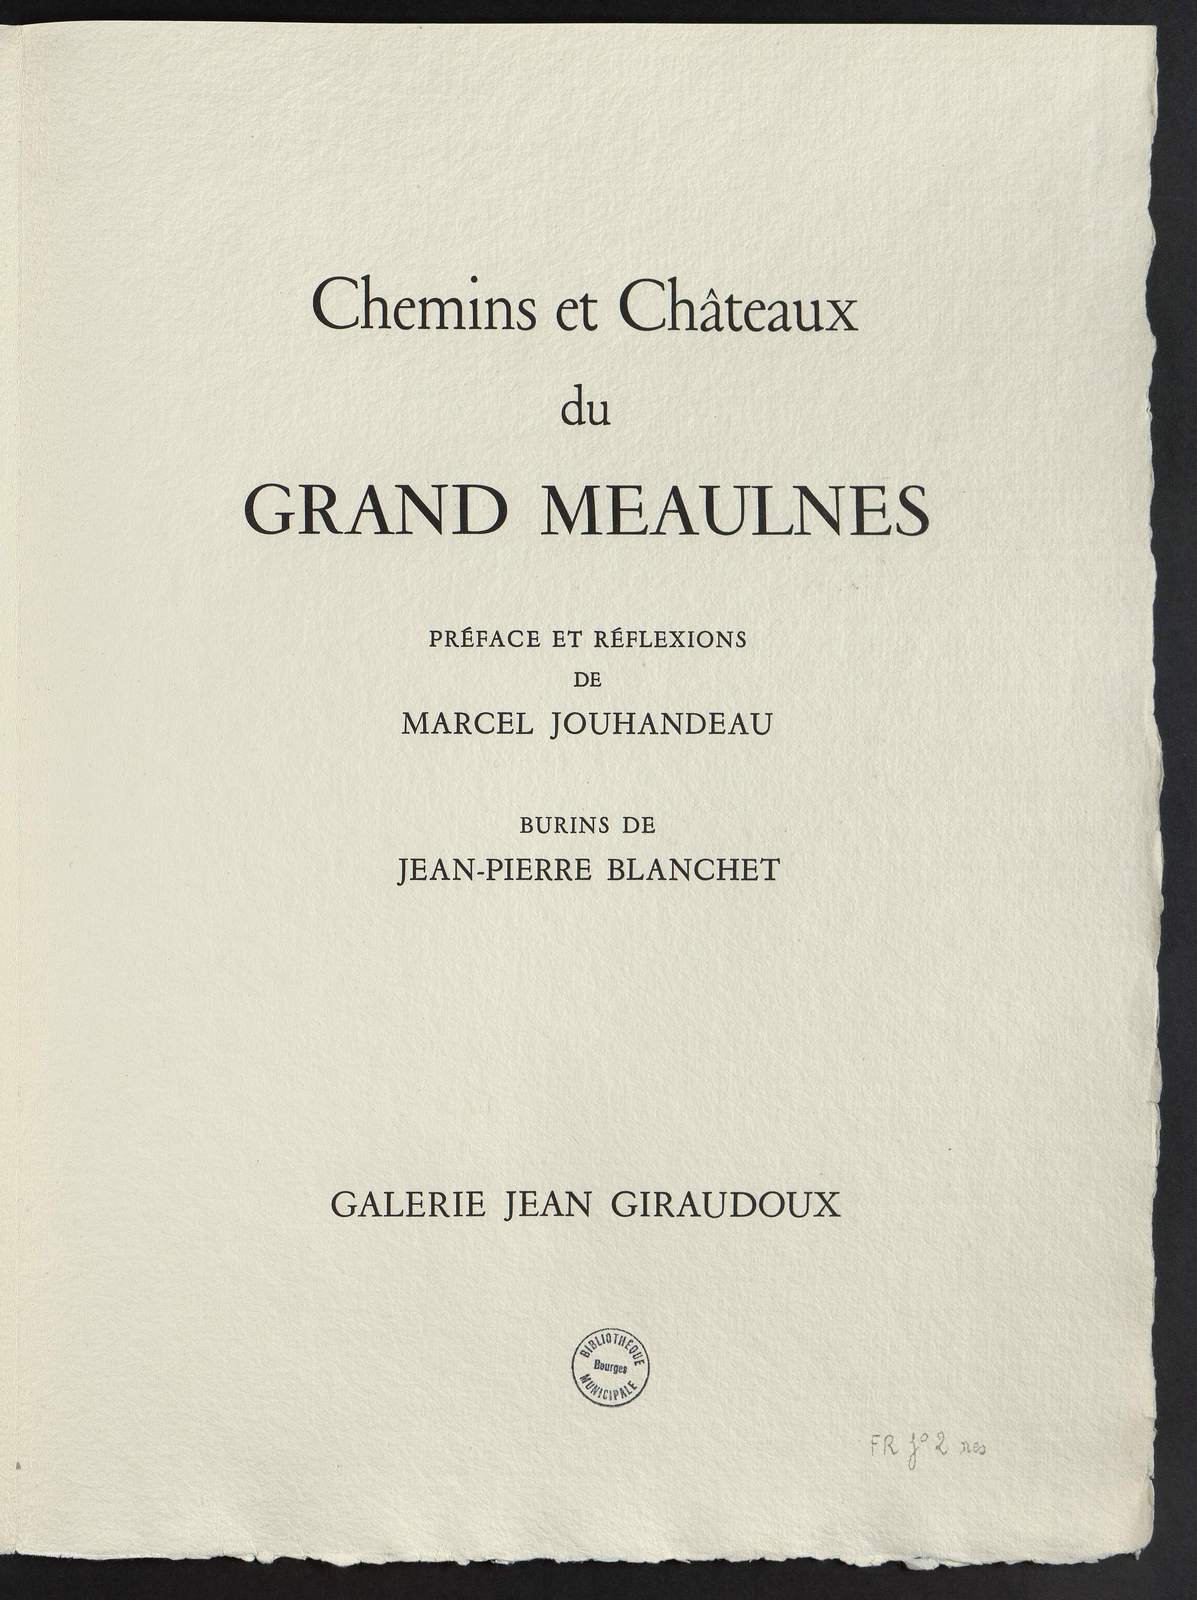 Chemins et châteaux du Grand Meaulnes, L'école d'Epineuil, illustré par Jean-Pierre Blanchet, Galerie Jean Giraudoux, 1961